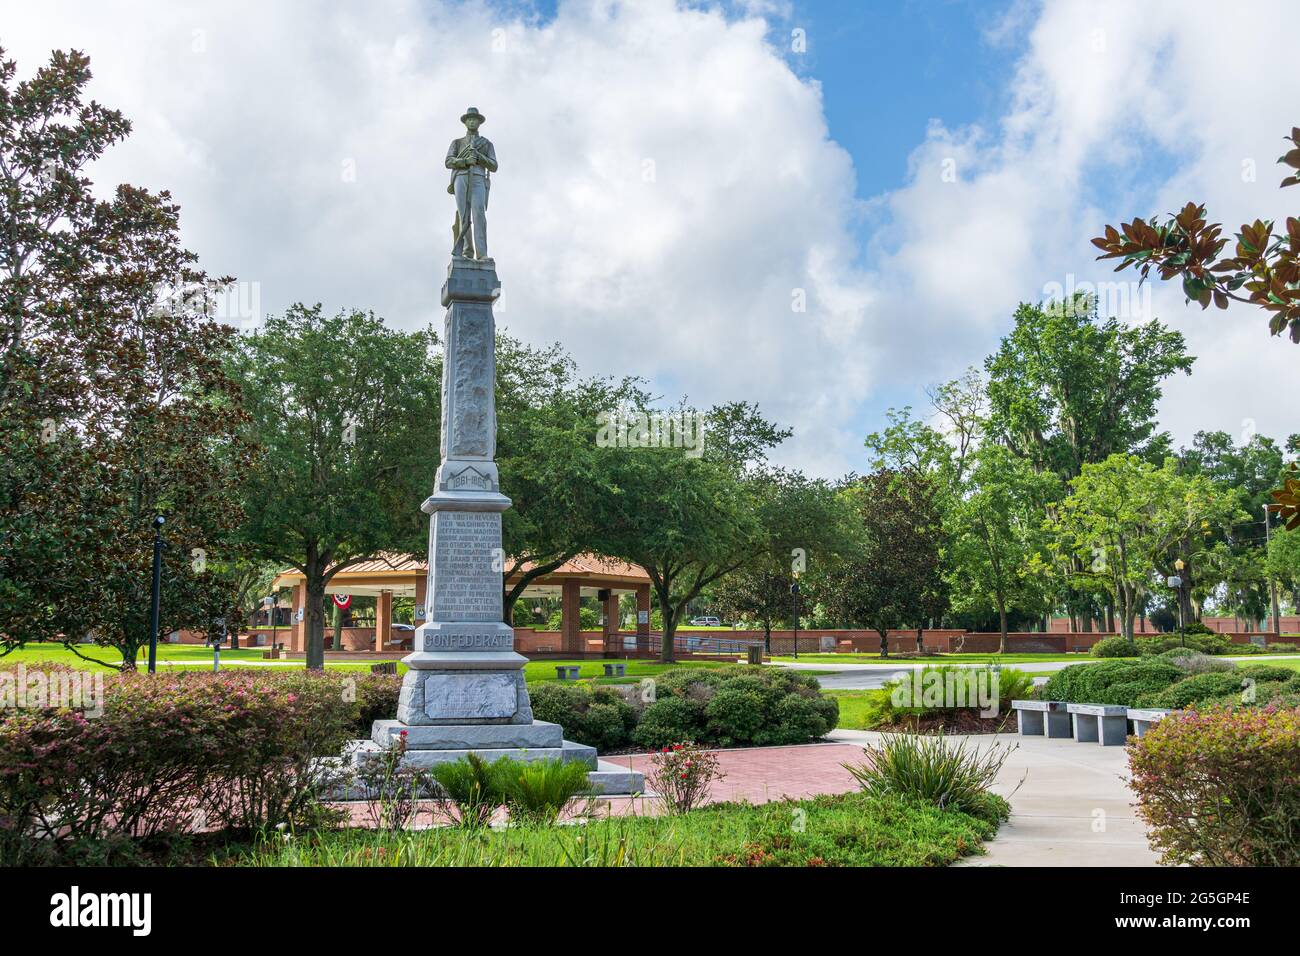 Monument dédié aux troupes confédérées de la guerre civile au parc commémoratif des vétérans du comté d'Ocala Marion - Ocala, Floride, États-Unis Banque D'Images